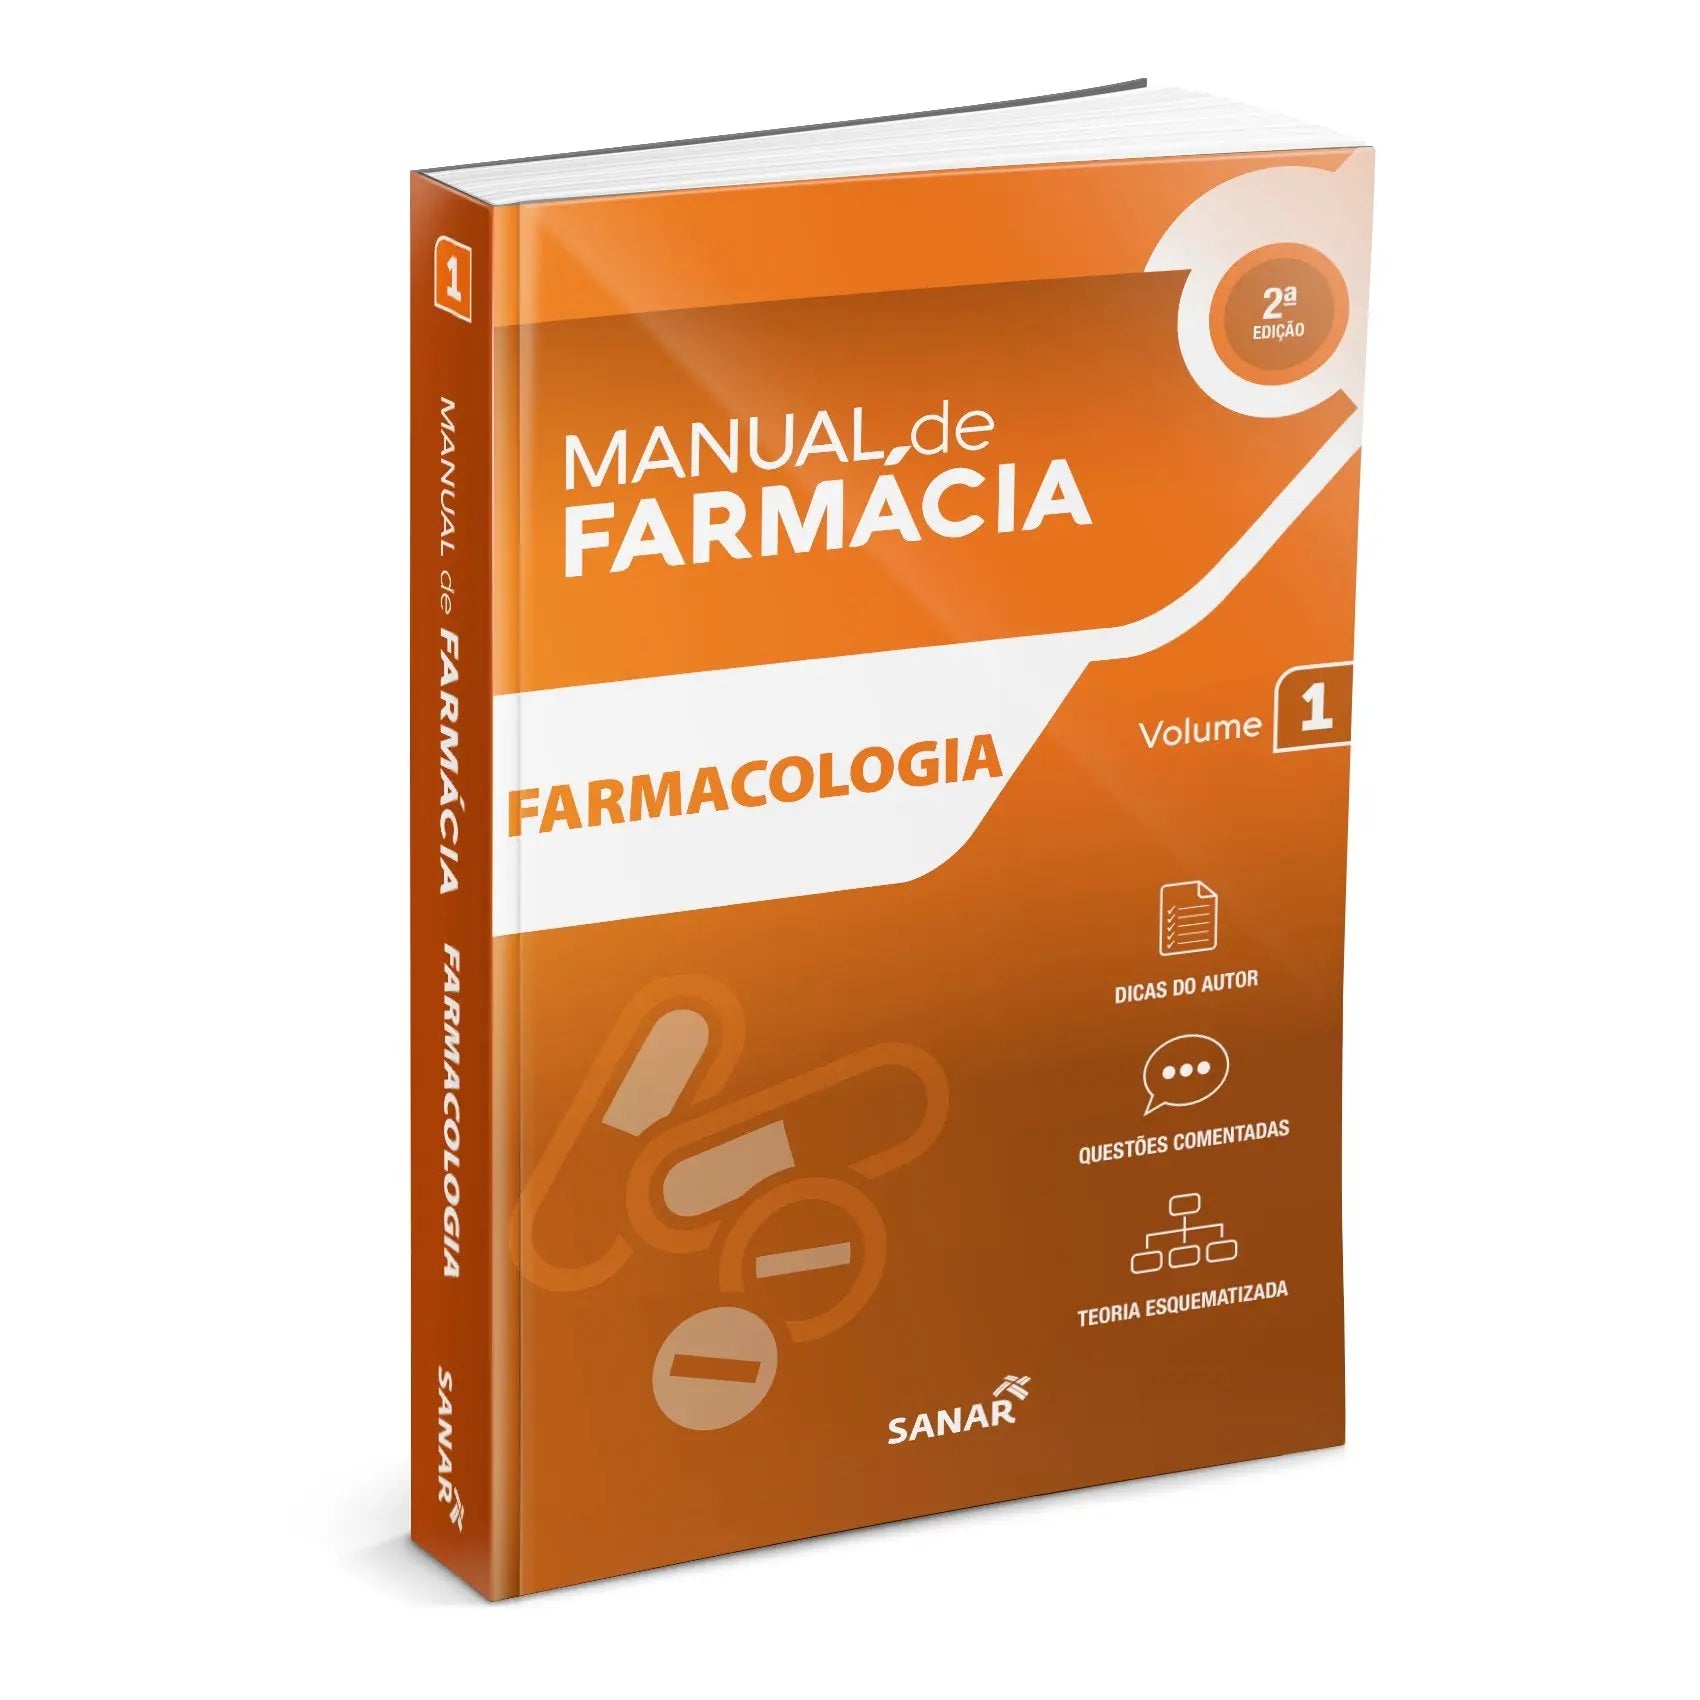 Imagem do livro Farmacologia (2ª Edição) - Coleção Manuais de Farmácia - Volume 1